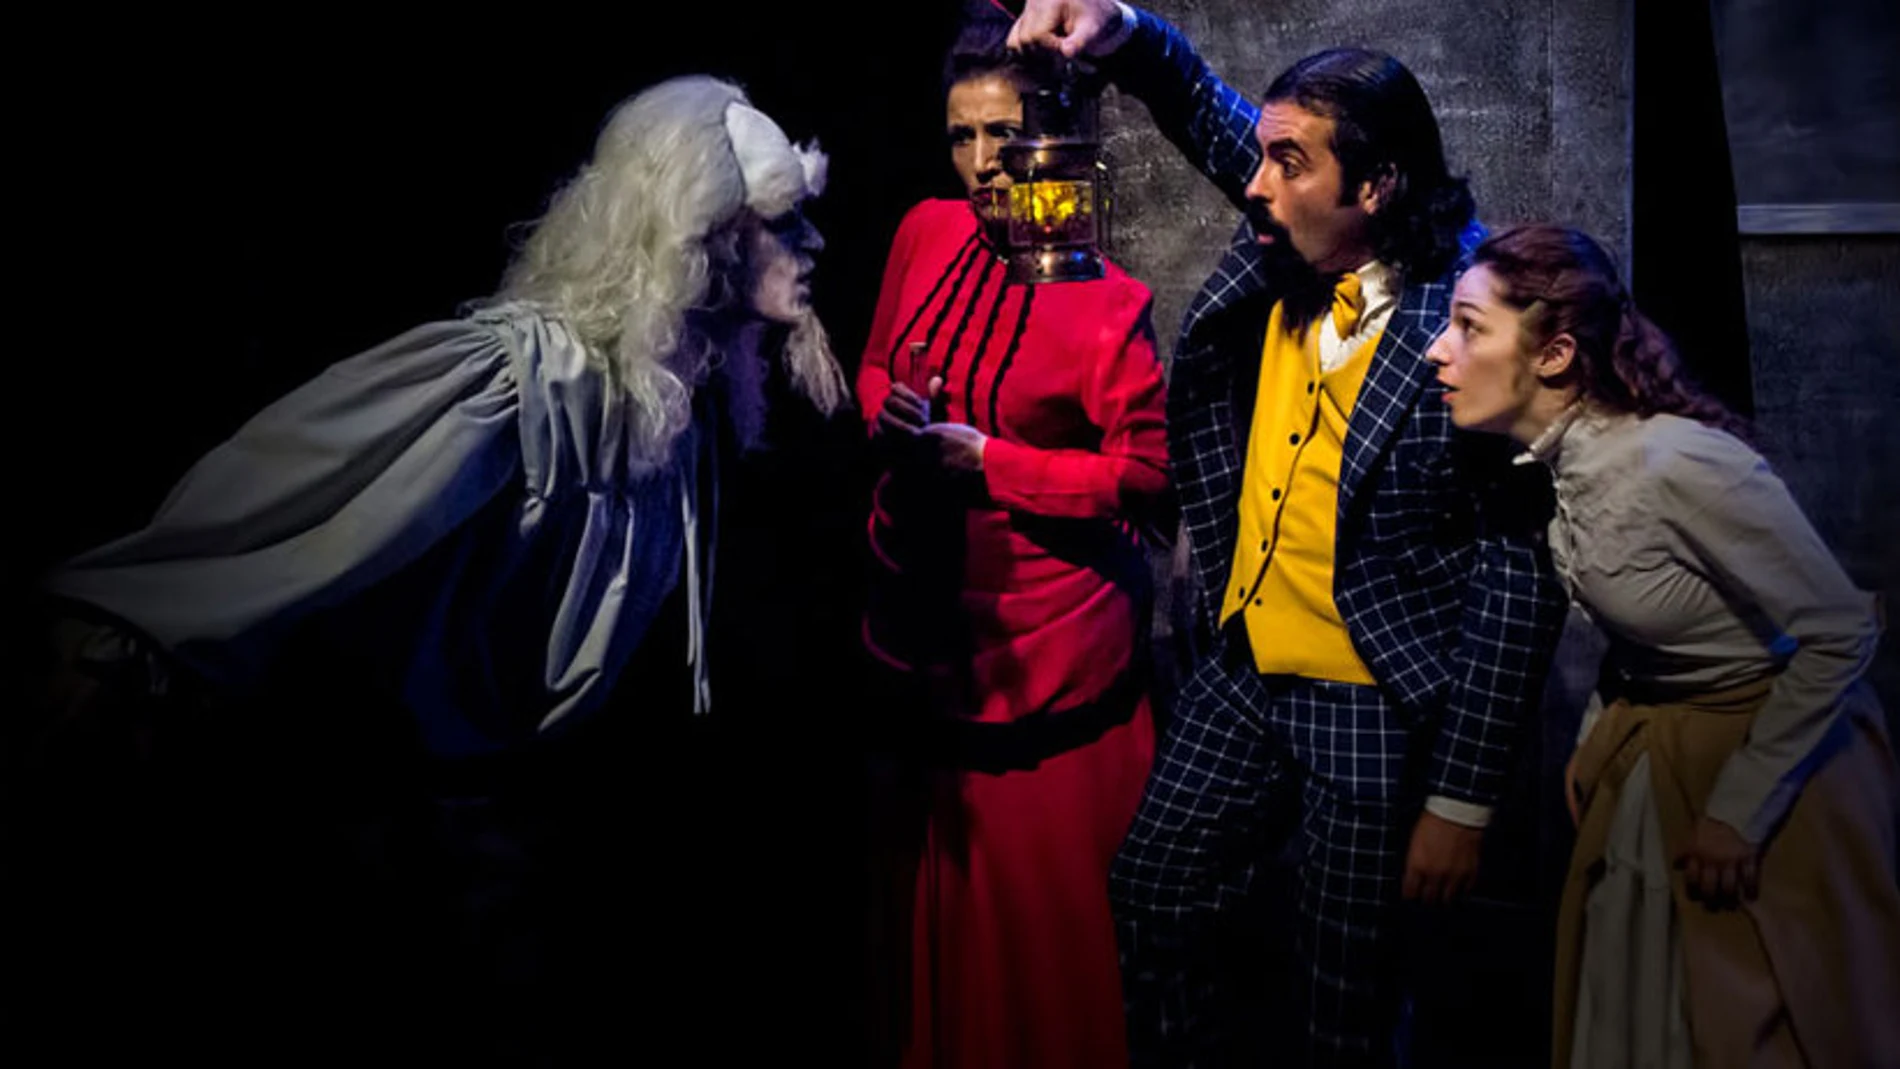 Una escena de la representación de «El fantasma de Canterville», con la familia Otis y el fantasma Sir Simon